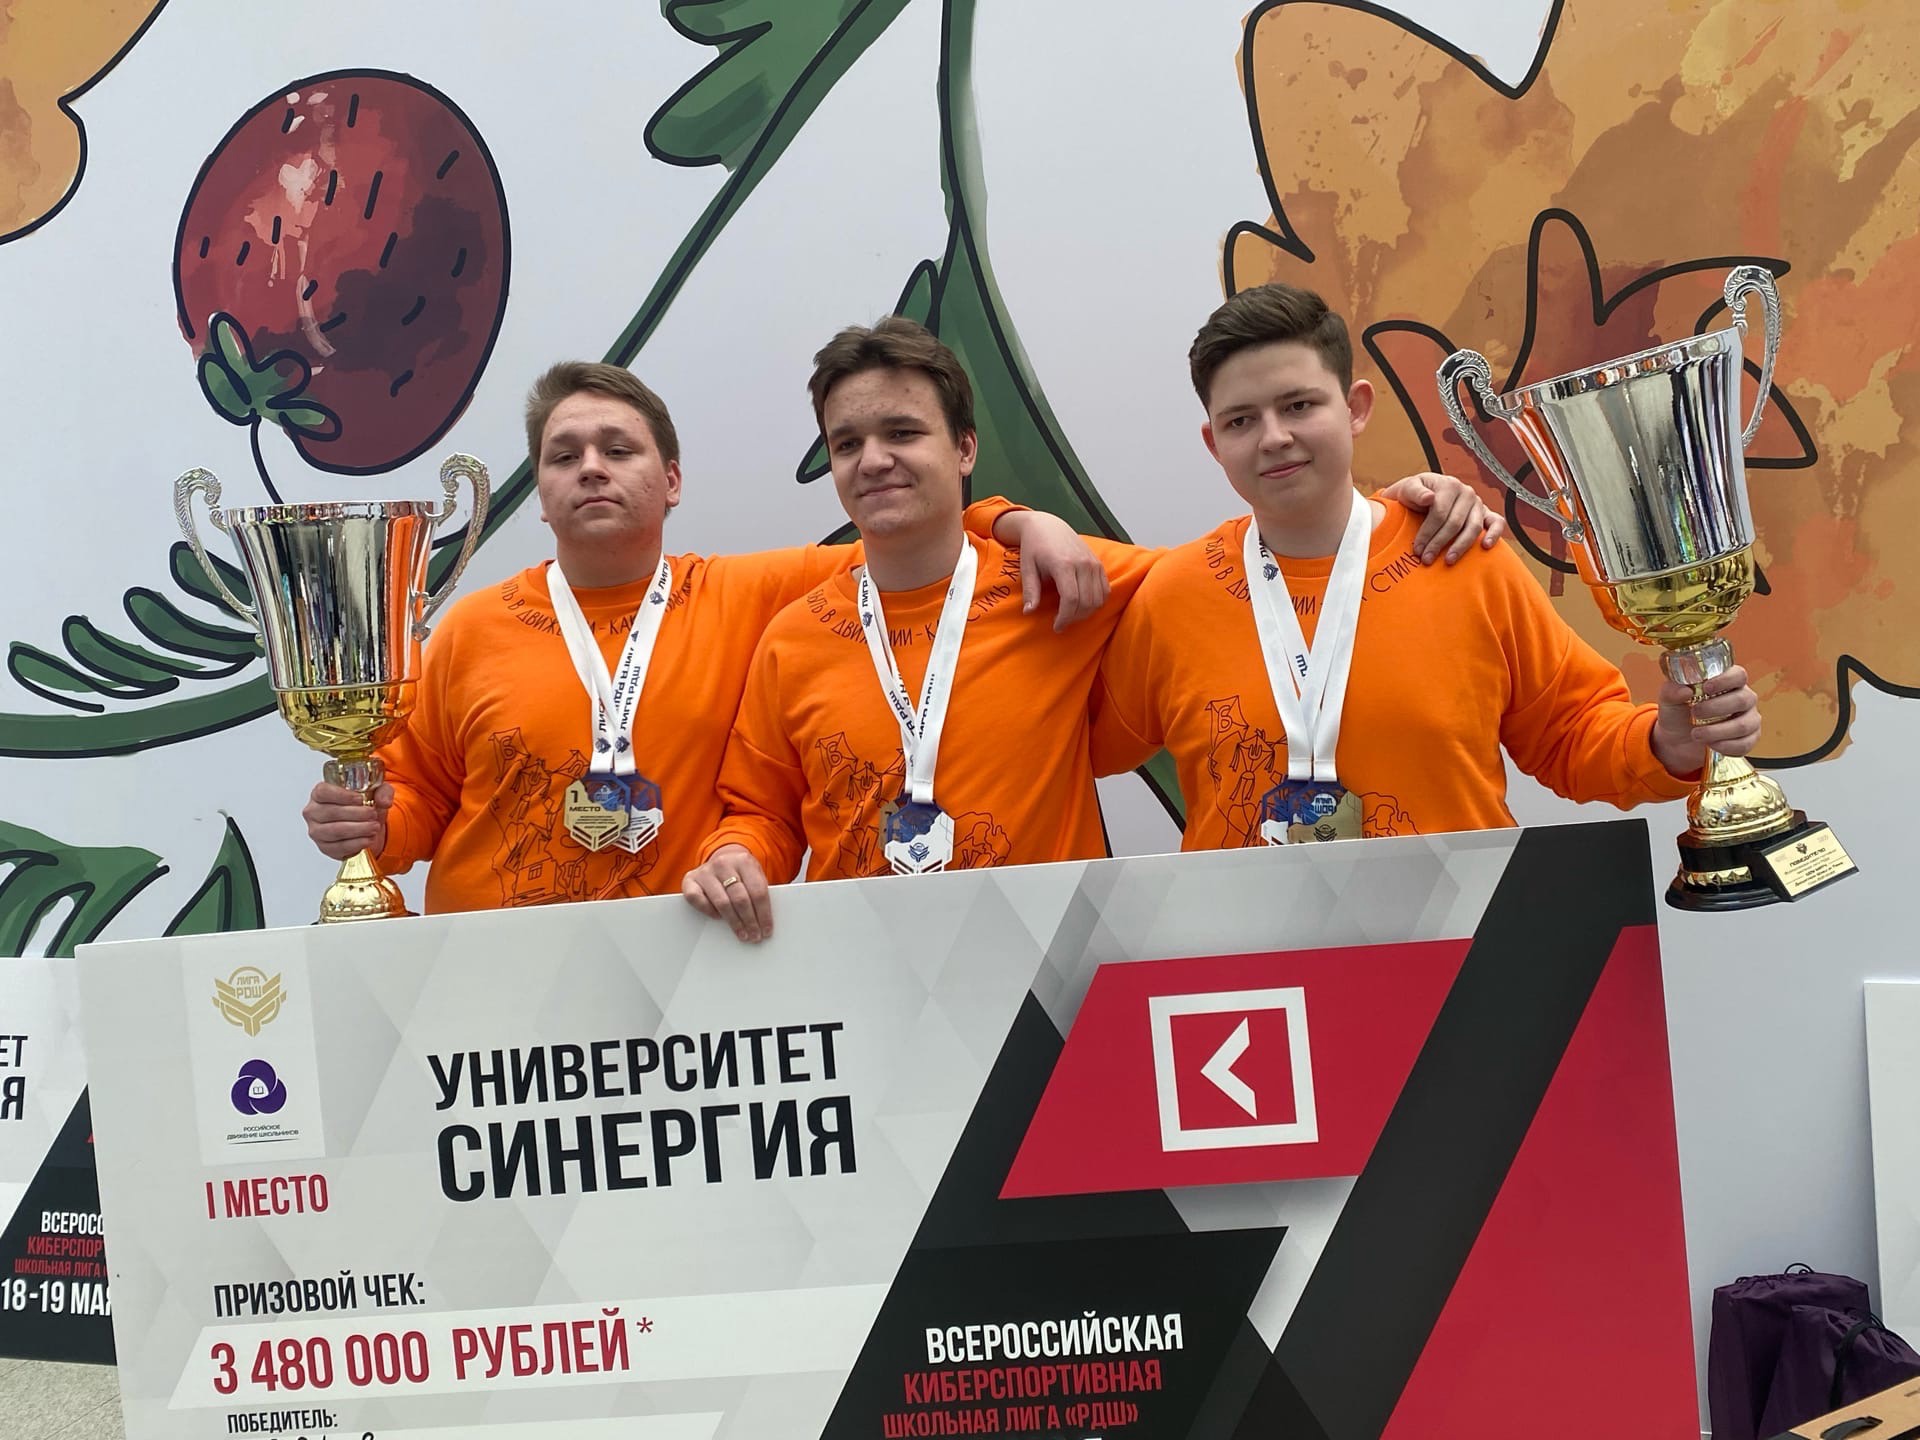 Финалисты конкурсов из Кузбасса на Большом школьном пикнике заняли четыре призовых места